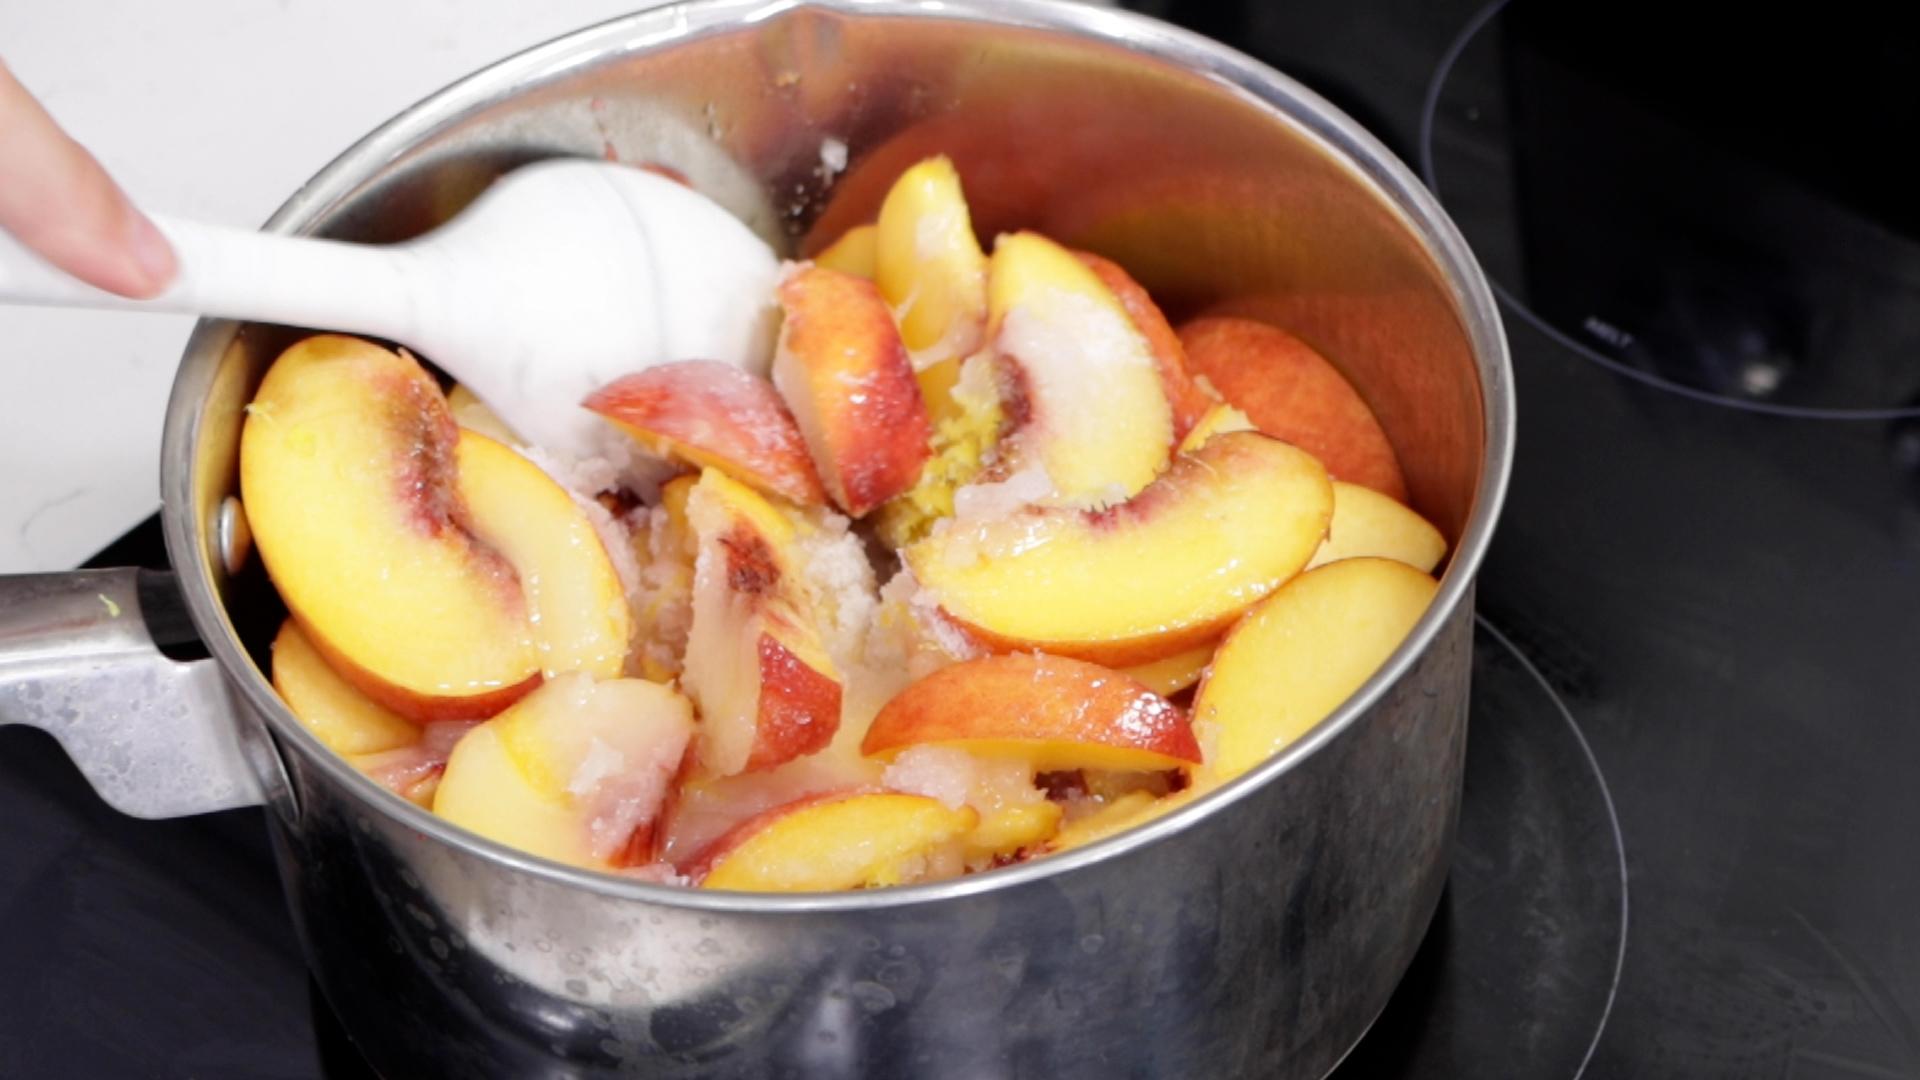 How to Make Peach Cobbler From Scratch Homemade Peach Cobbler Recipe.00_03_25_03.Still008.jpg